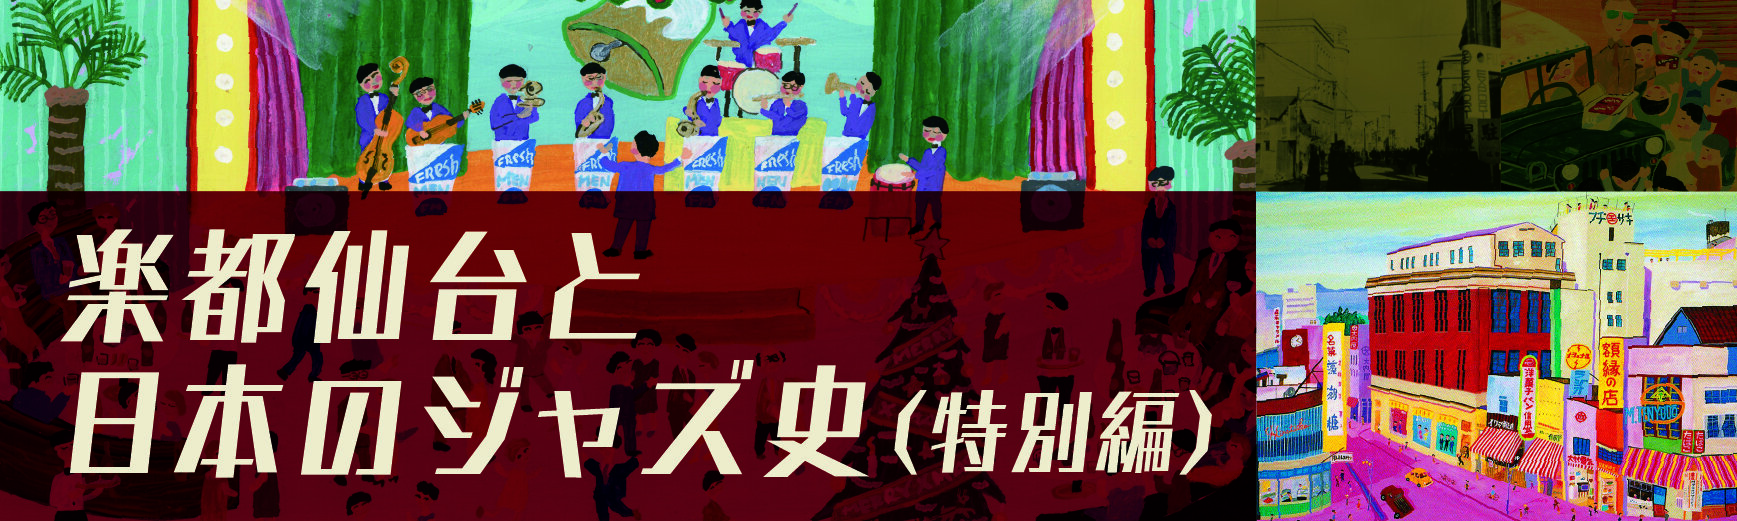 特别篇《乐都仙台和日本的爵士史~战后GHQ到哈科班文化的轨迹~》视频发布中